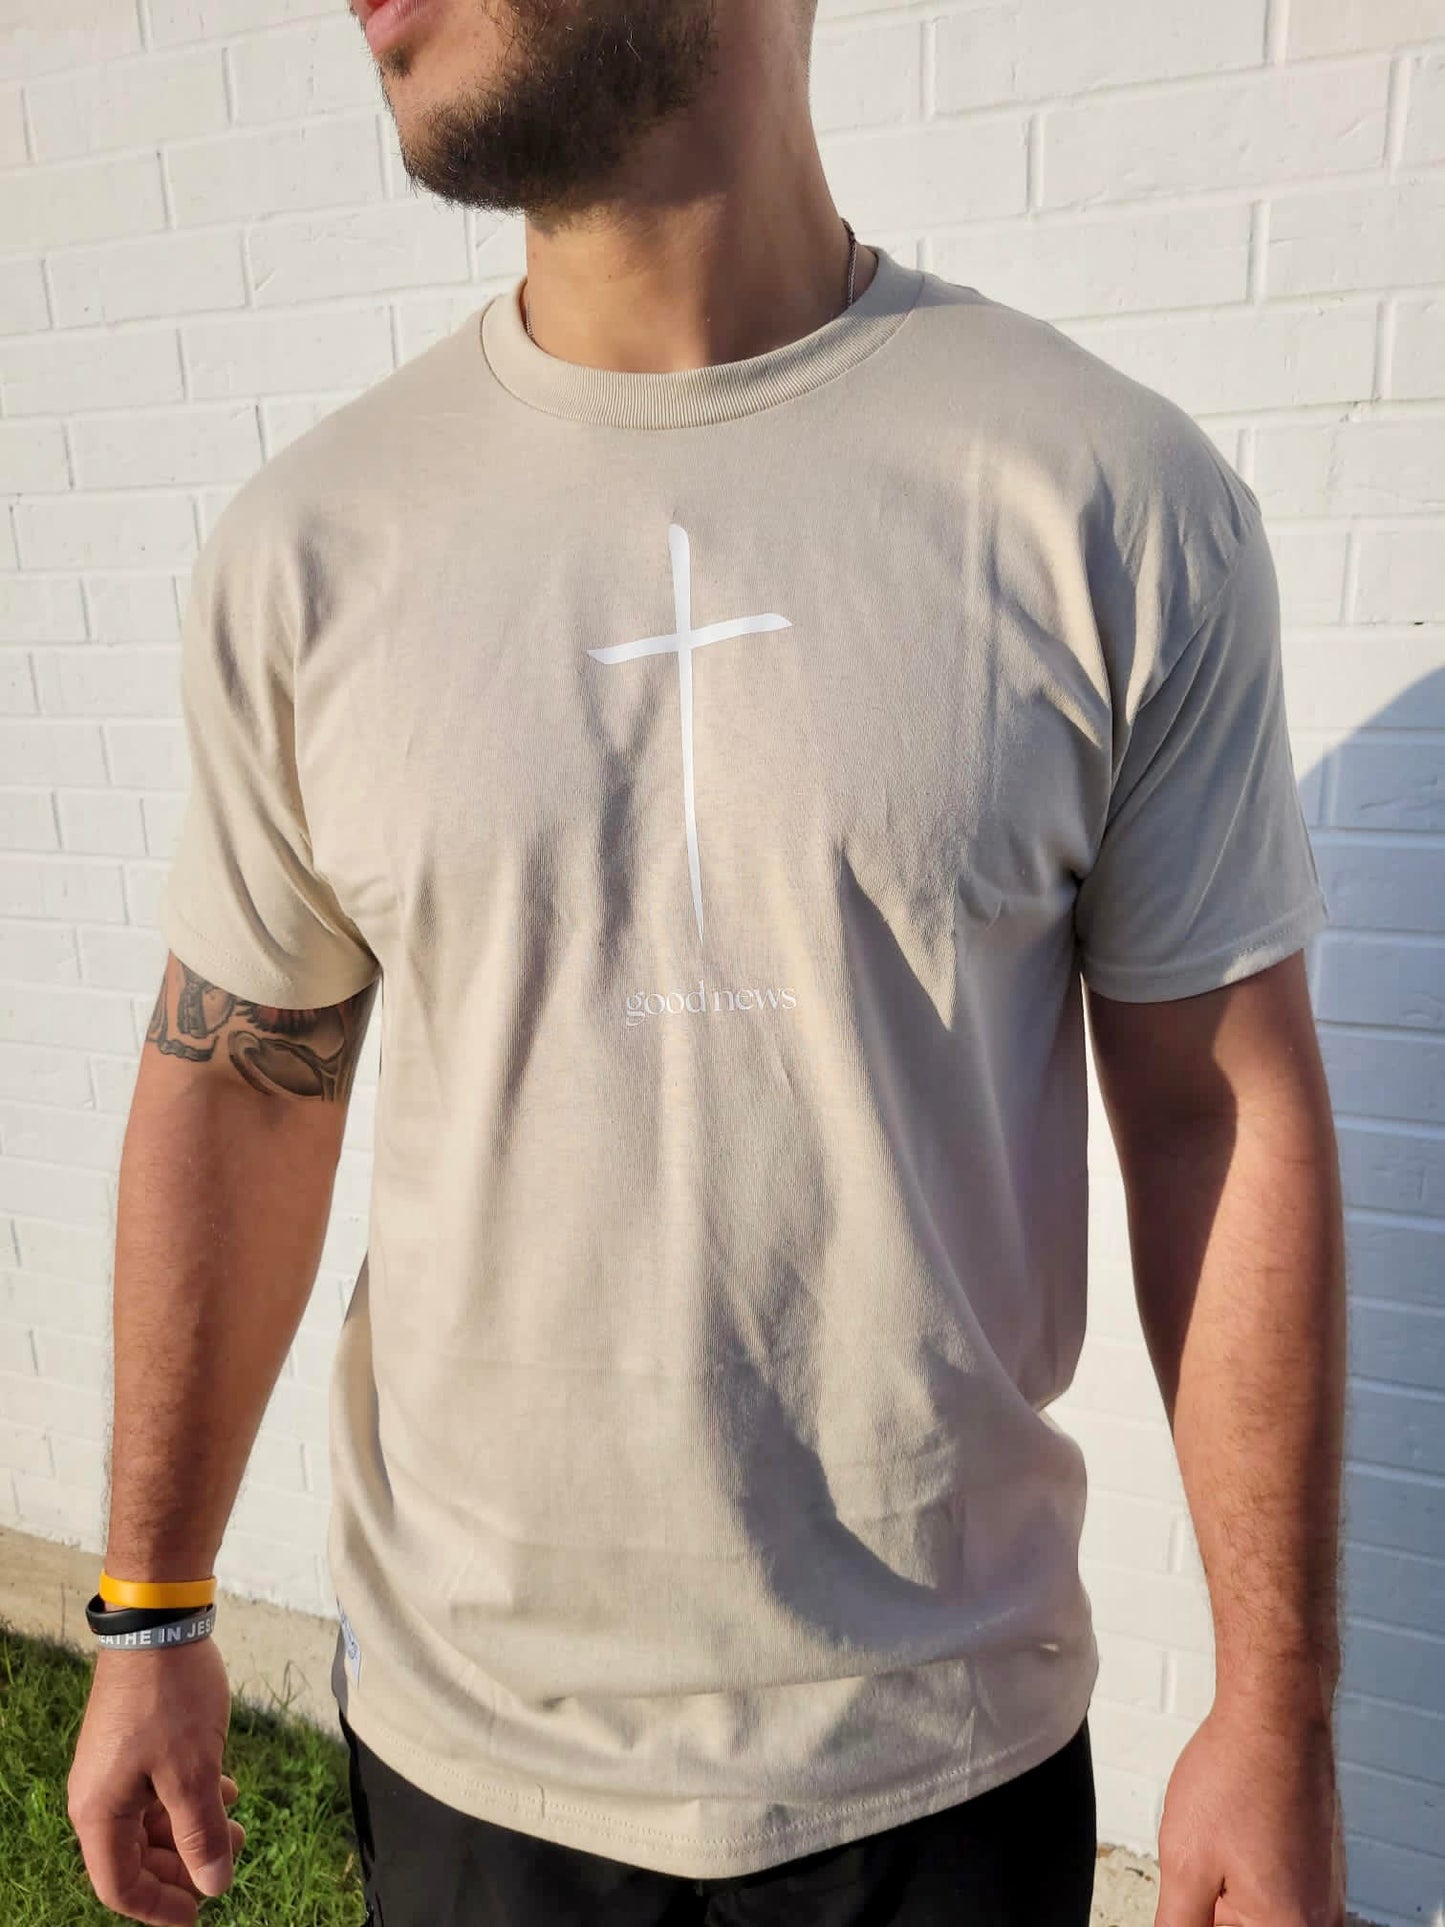 Good News Cross Unisex T-Shirt